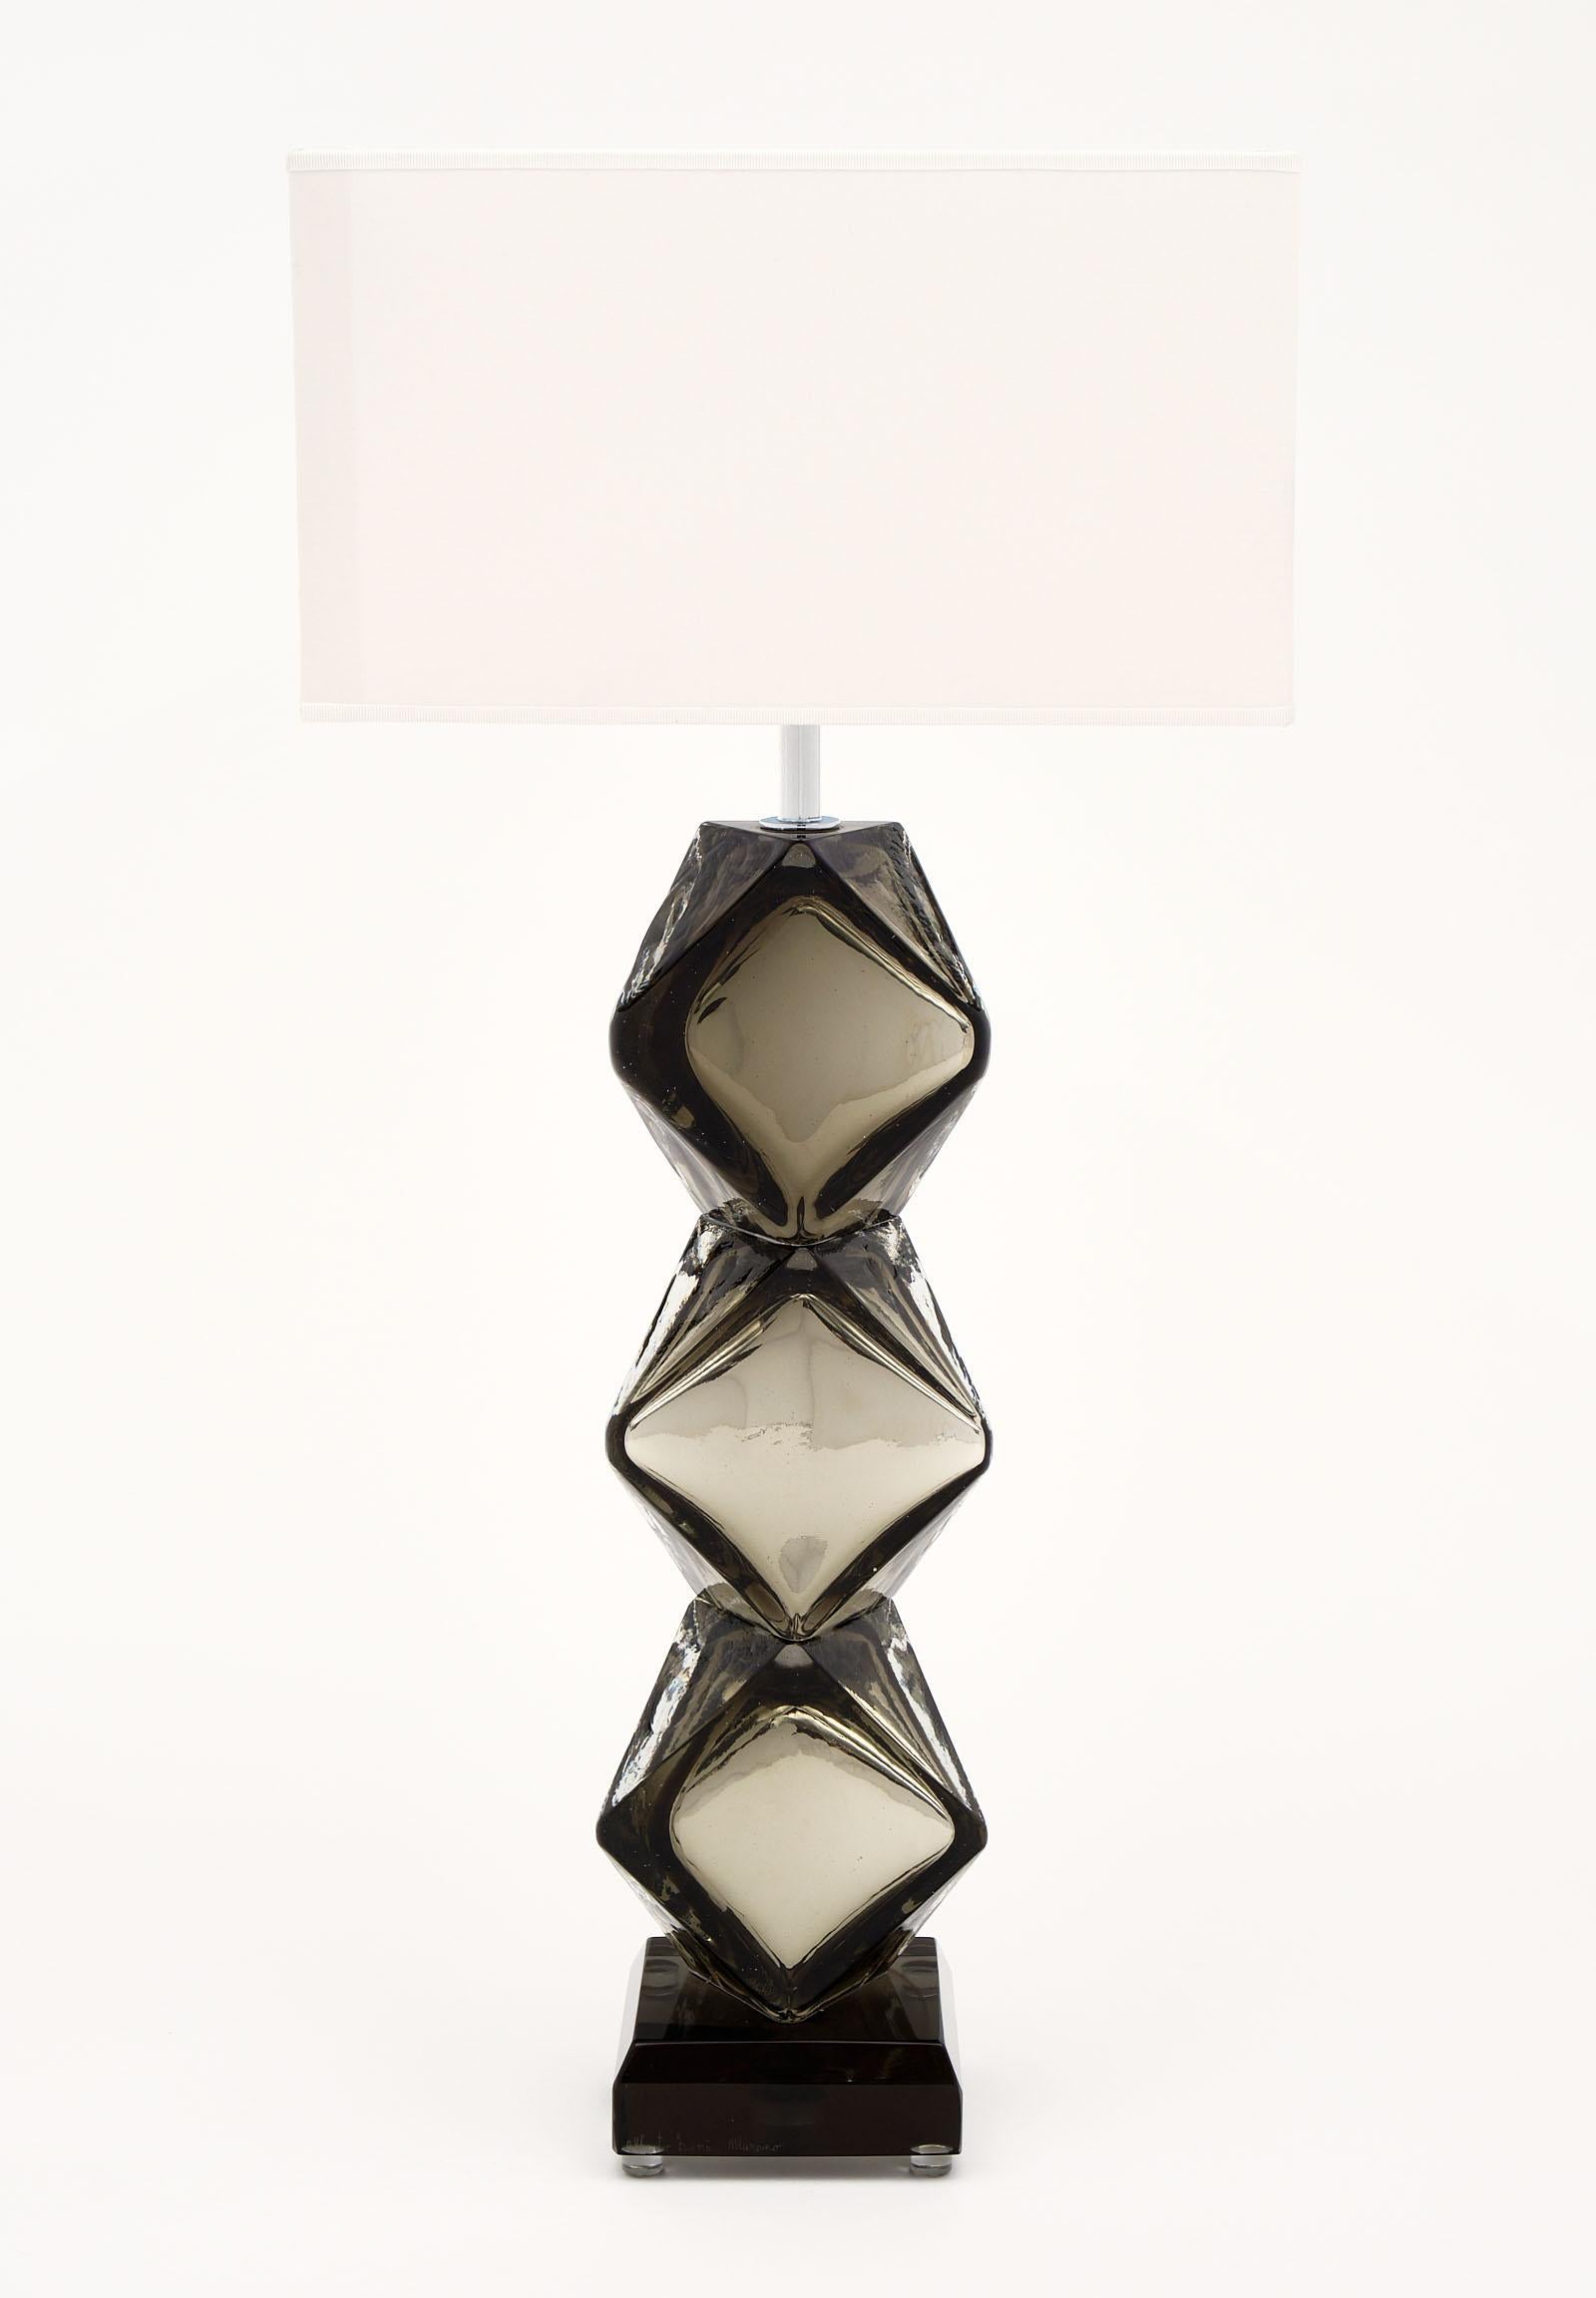 Lampes specchiato en verre de Murano d'Alberto Dona. Cette paire de lampes est en verre specchiato gris fumé et argenté soufflé à la main avec doublure de mercure, formée de trois composants en verre multifacettes en forme de losange sur une base en